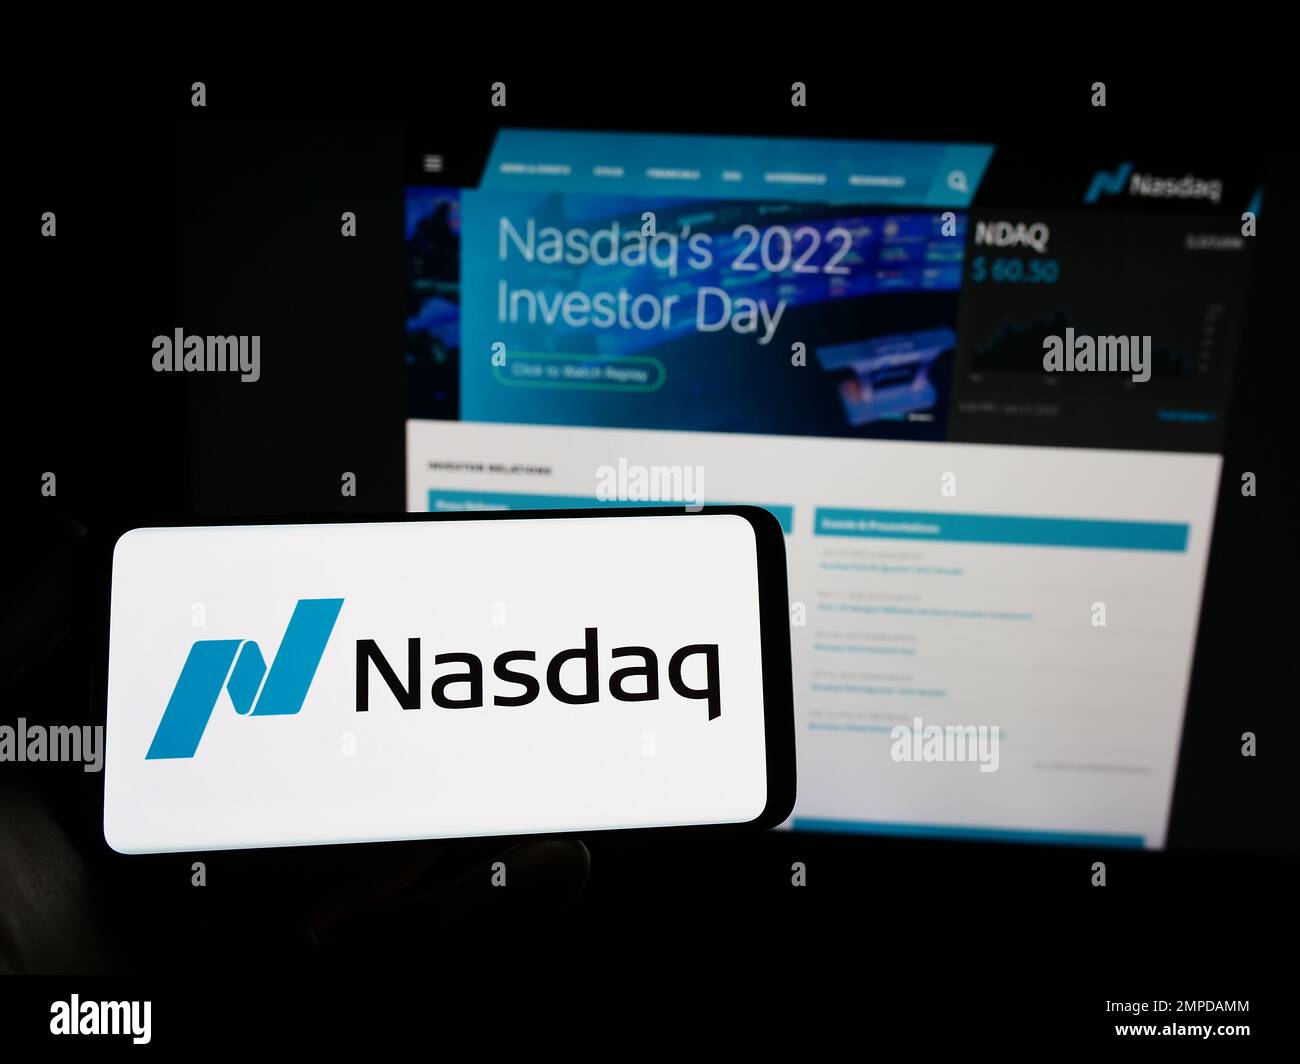 Persona in possesso di smartphone con il logo della borsa valori statunitense Nasdaq sullo schermo di fronte al sito Web. Messa a fuoco sul display del telefono. Foto Stock